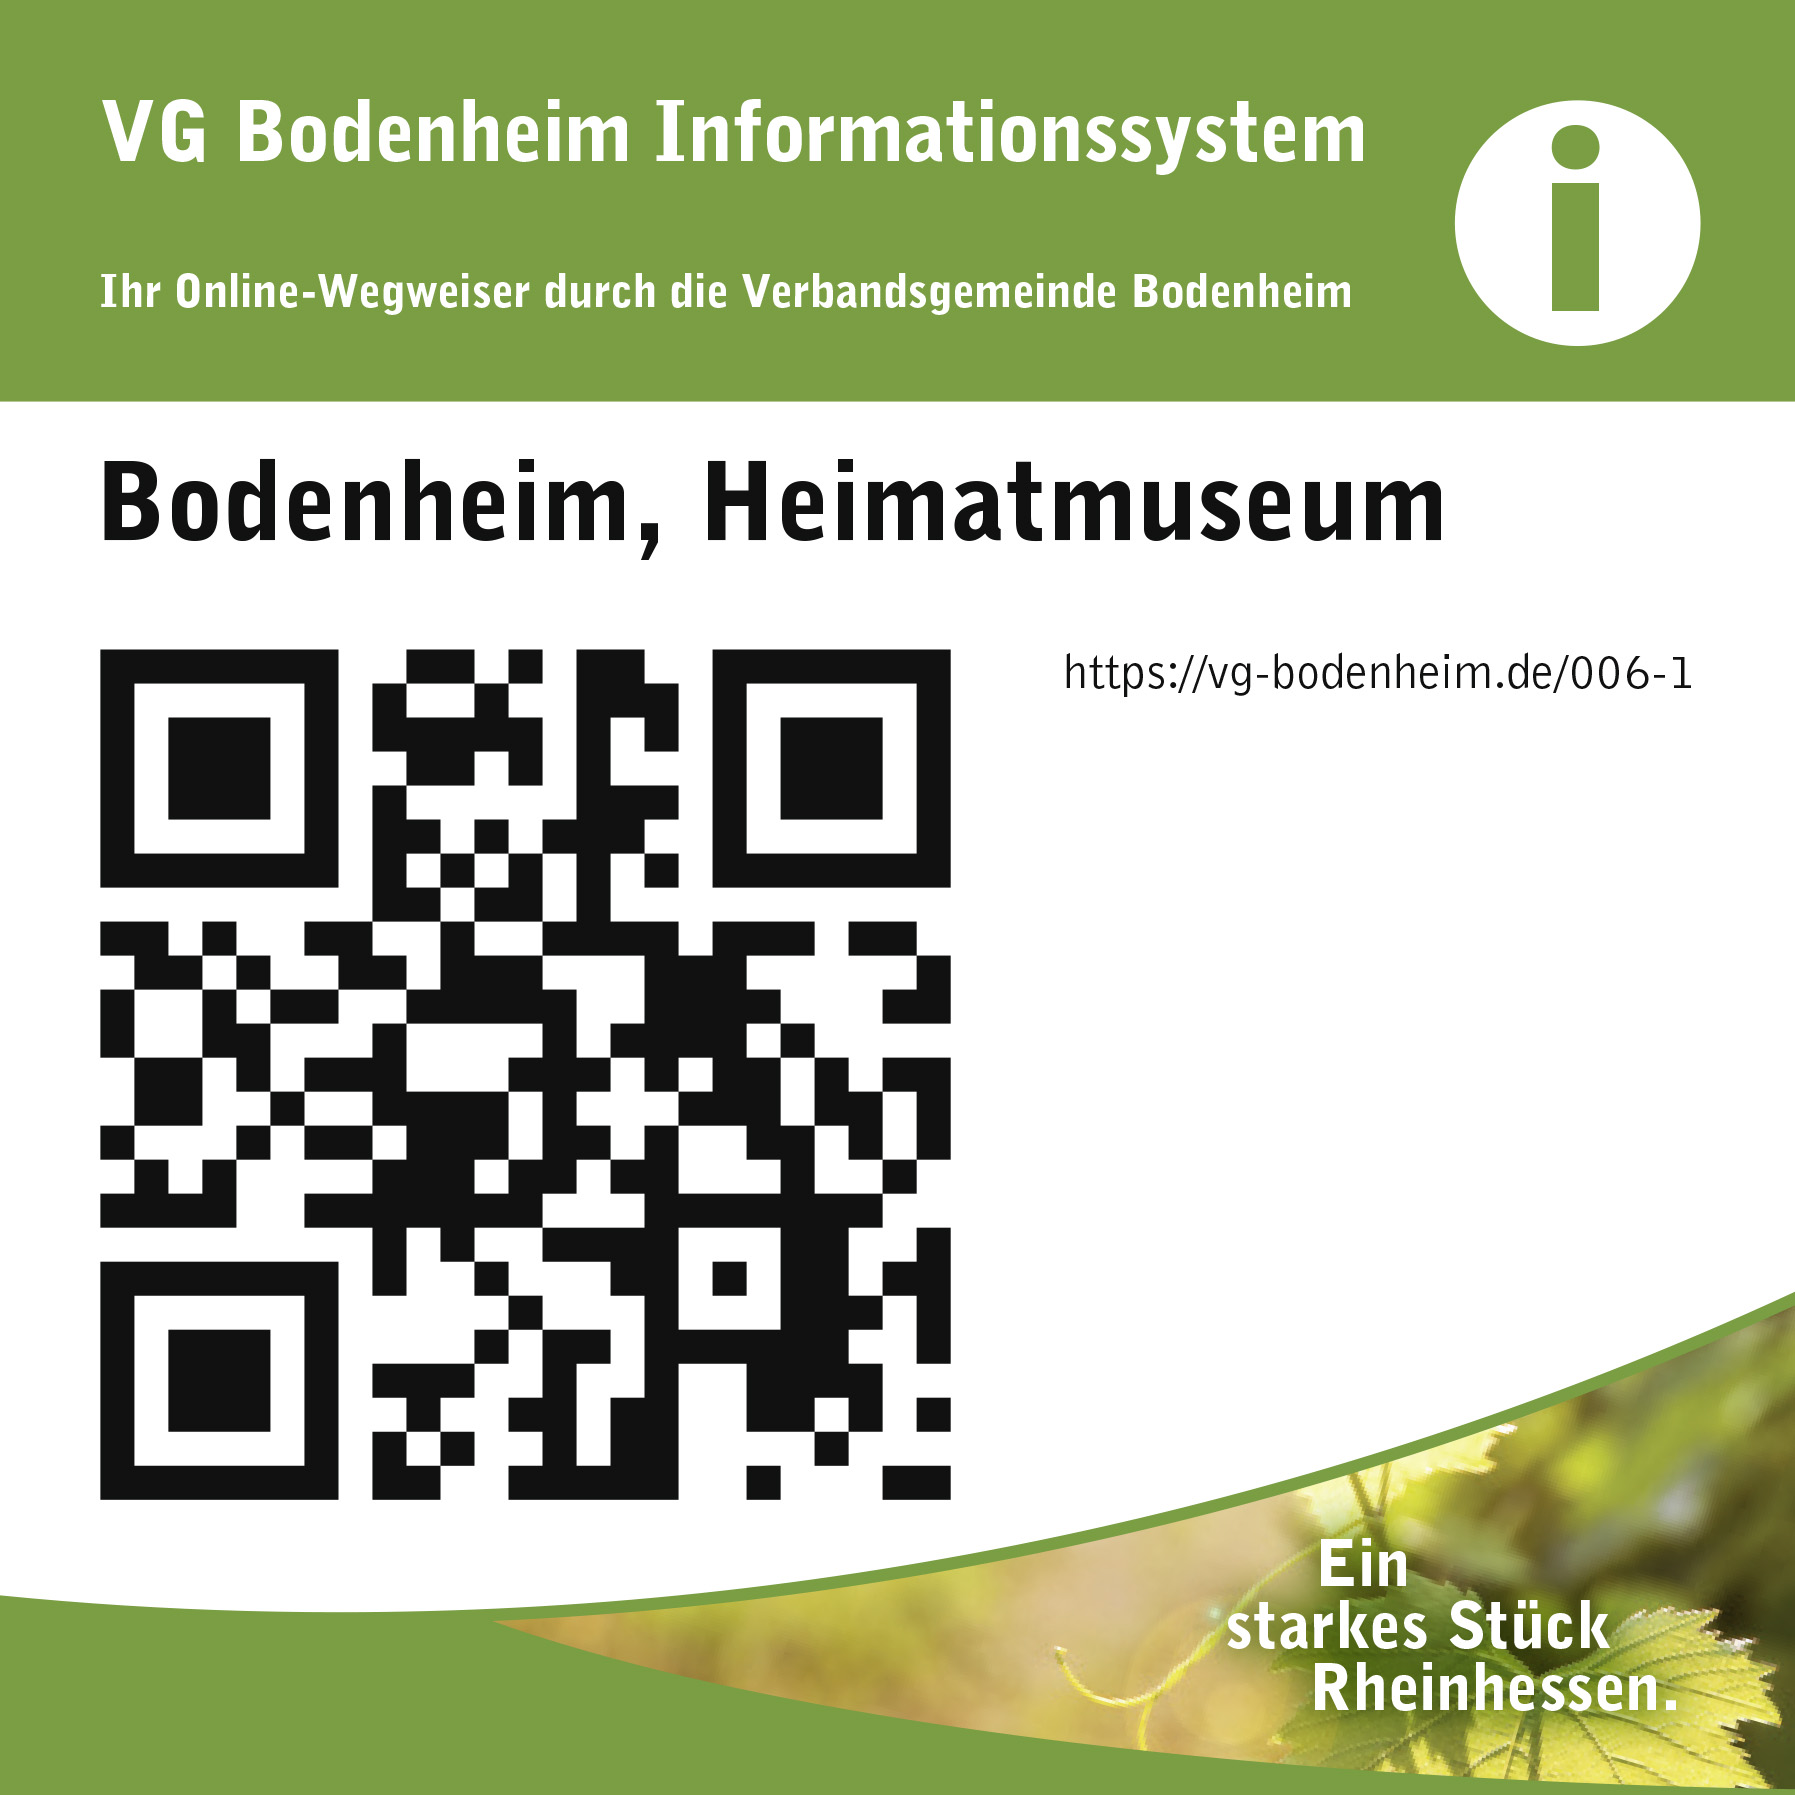 Abbildung QR-Code Heimatmuseum Bodenheim